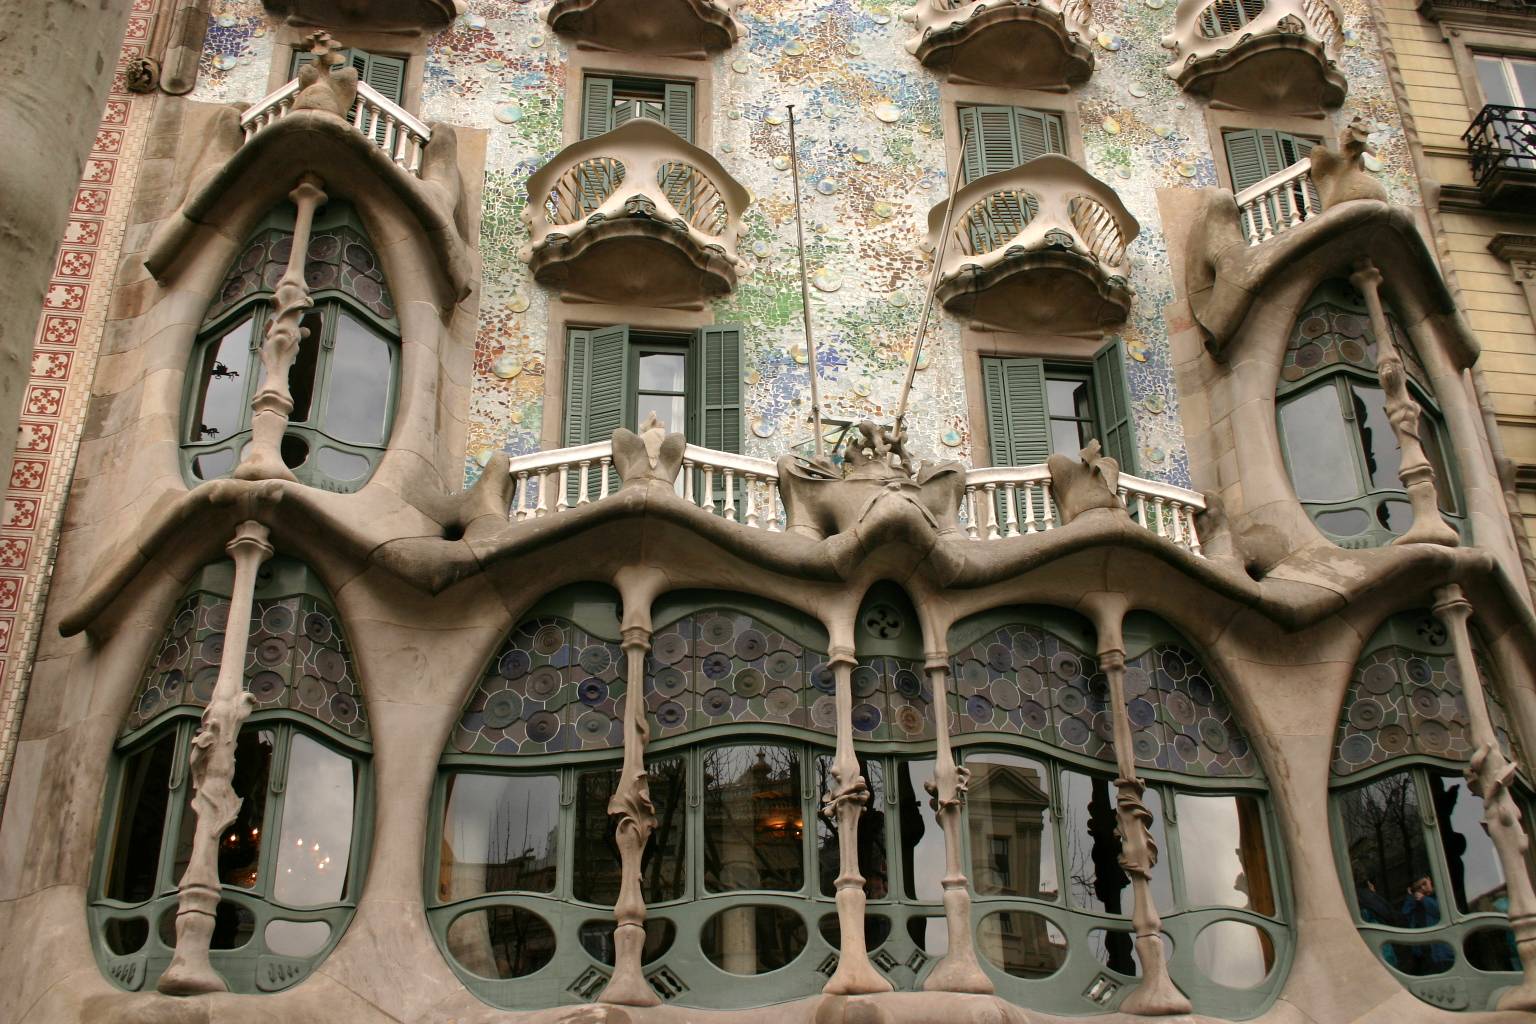 File:Gaudi's Casa Batllo, Barcelona, Spain (IMG 5380a).jpg - Wikimedia